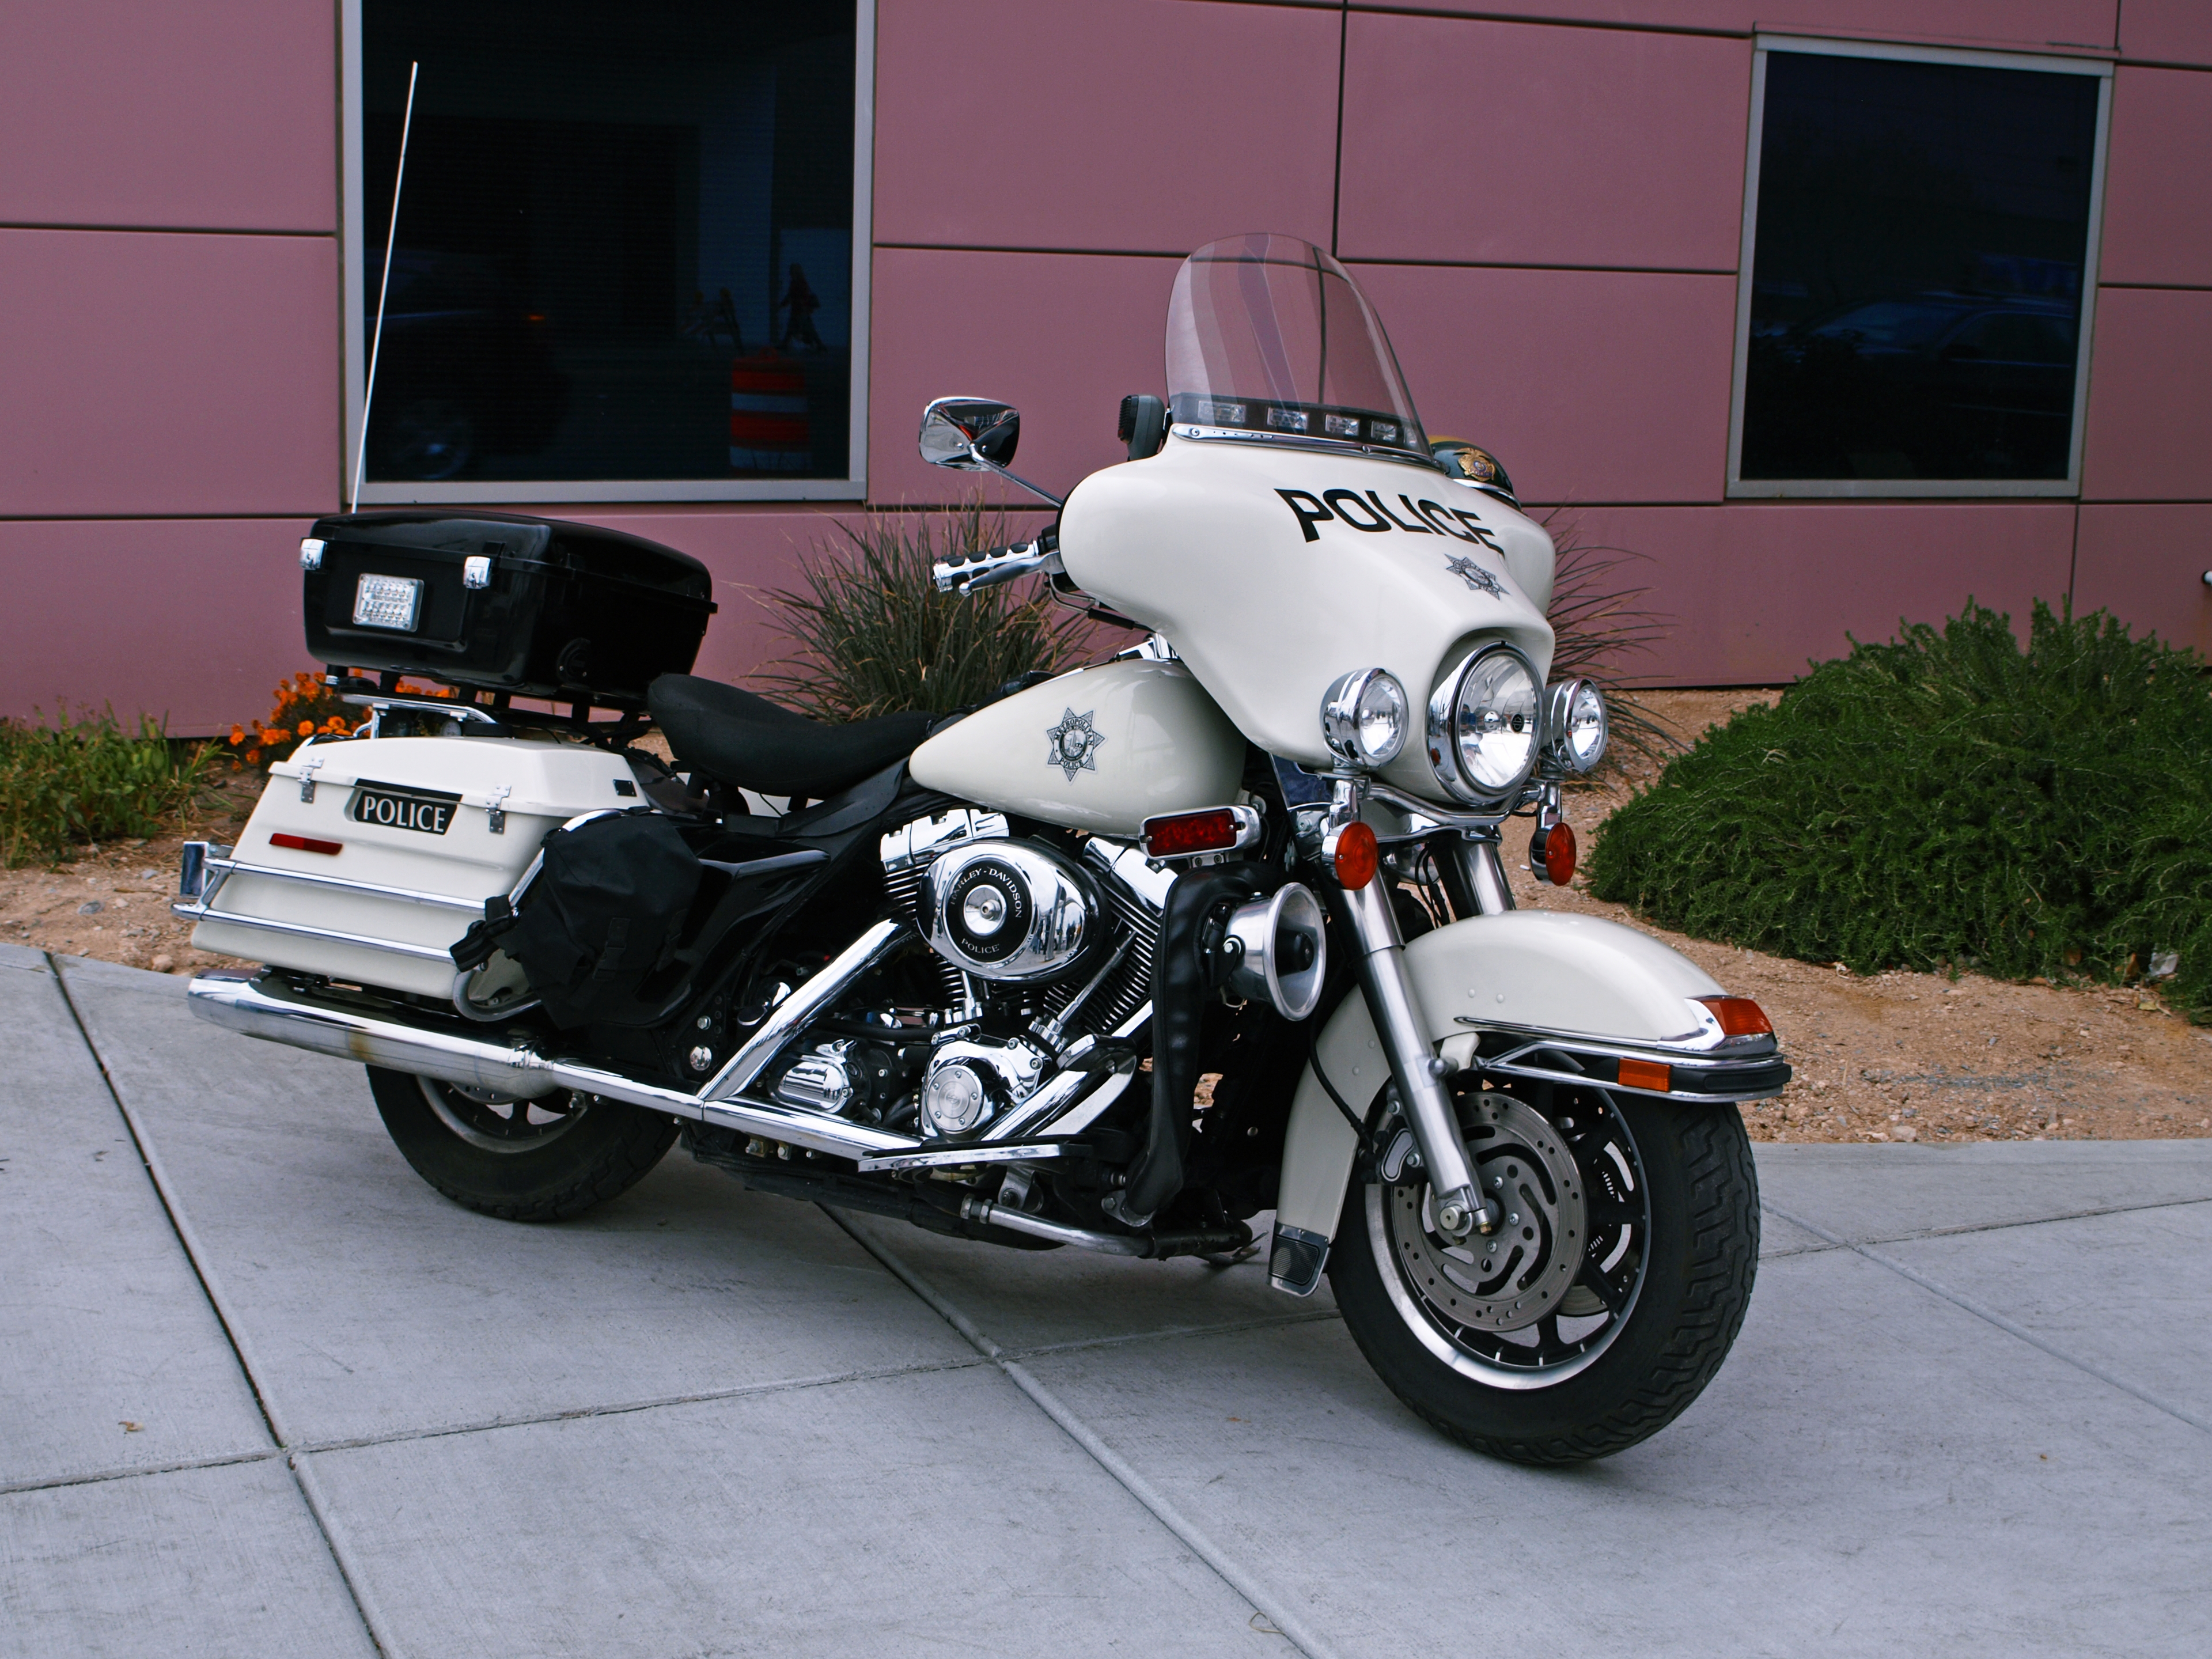 Meilleurs fonds d'écran Police Harley Davidson pour l'écran du téléphone